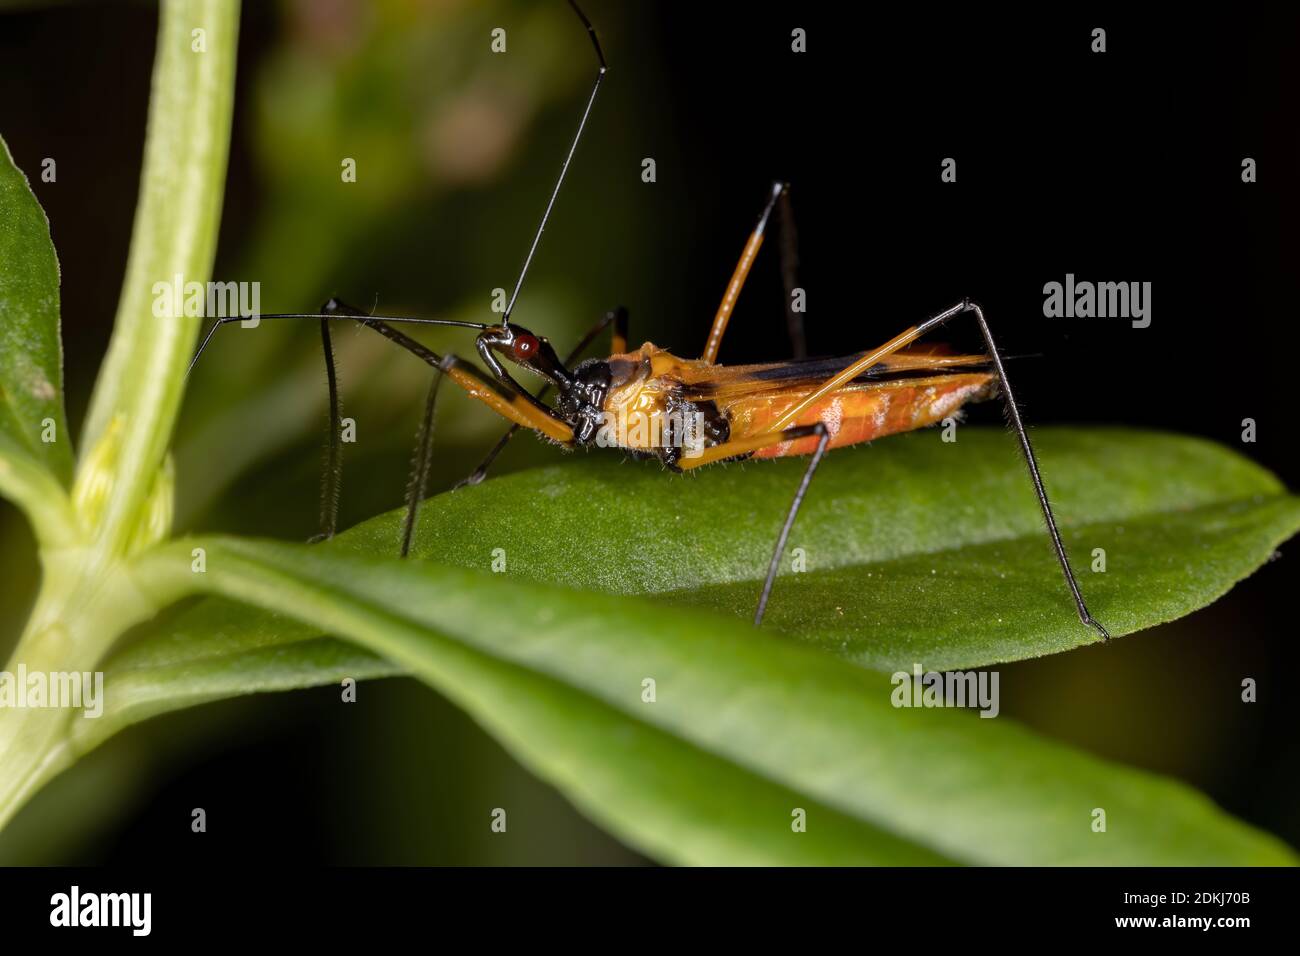 Assassin Bug of the species Zelus vespiformis Stock Photo